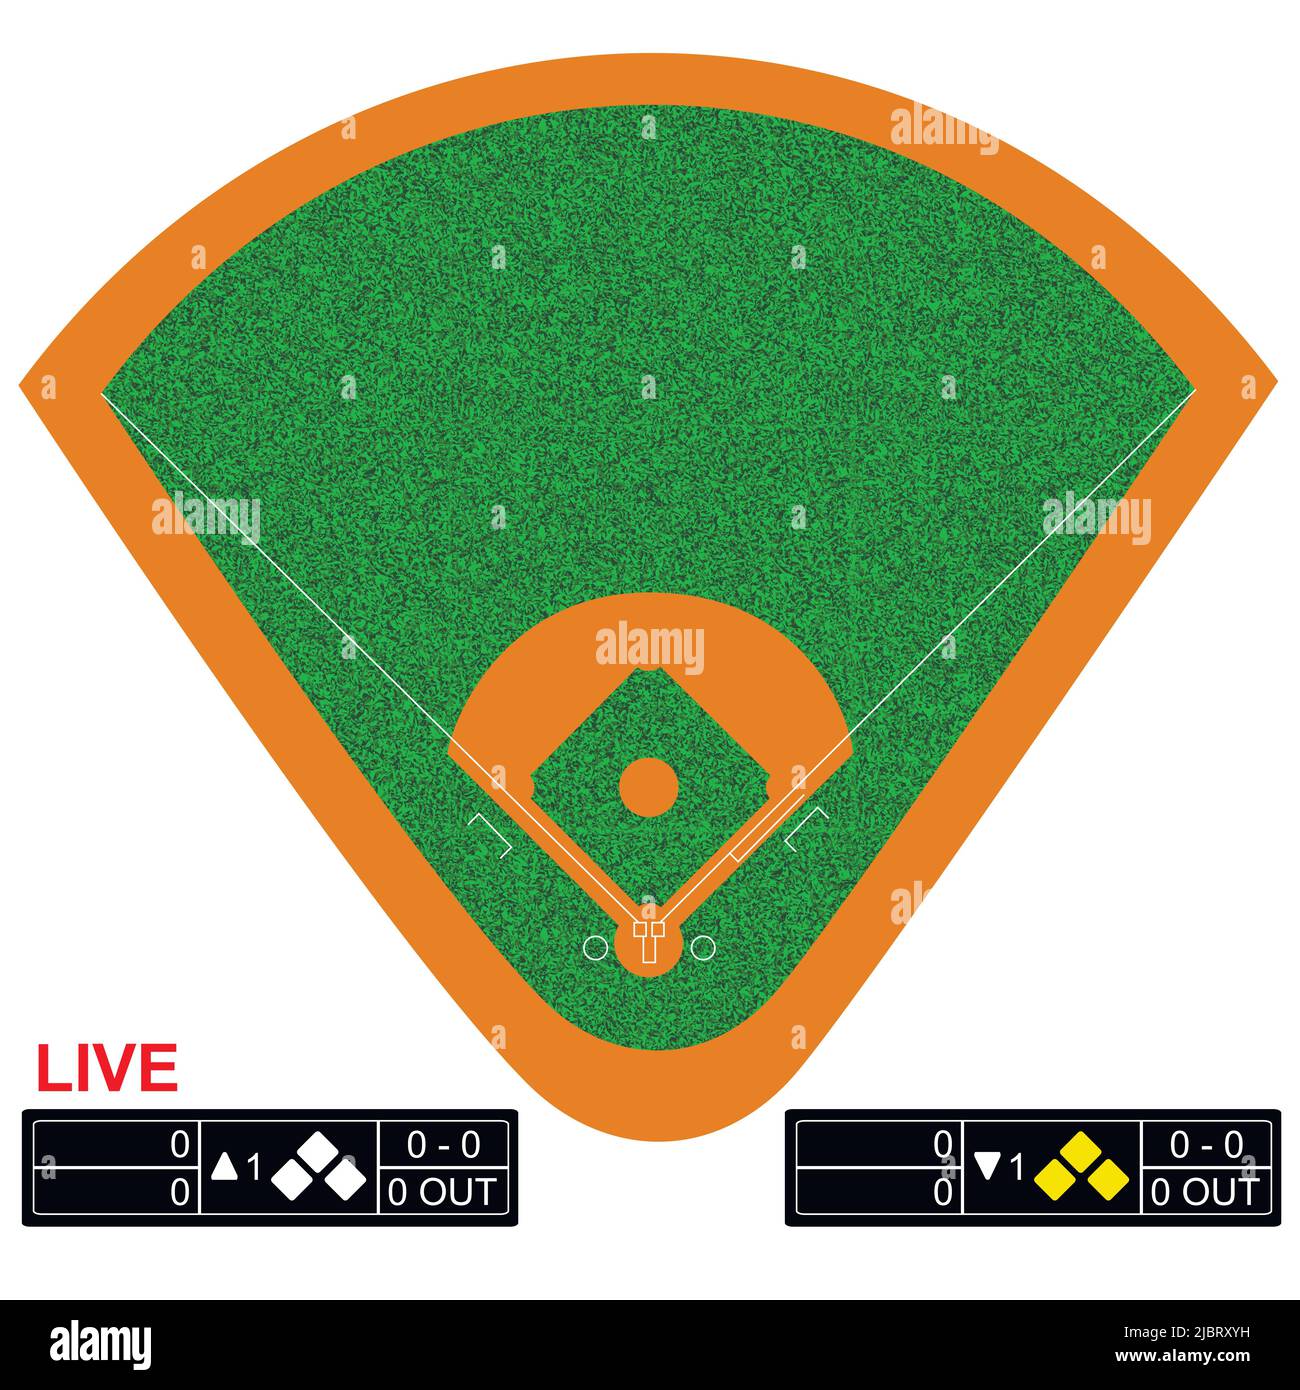 Illustrazione vettoriale del campo da baseball. Infografiche per pagine web, trasmissioni sportive, sfondi di strategie. Illustrazione Vettoriale